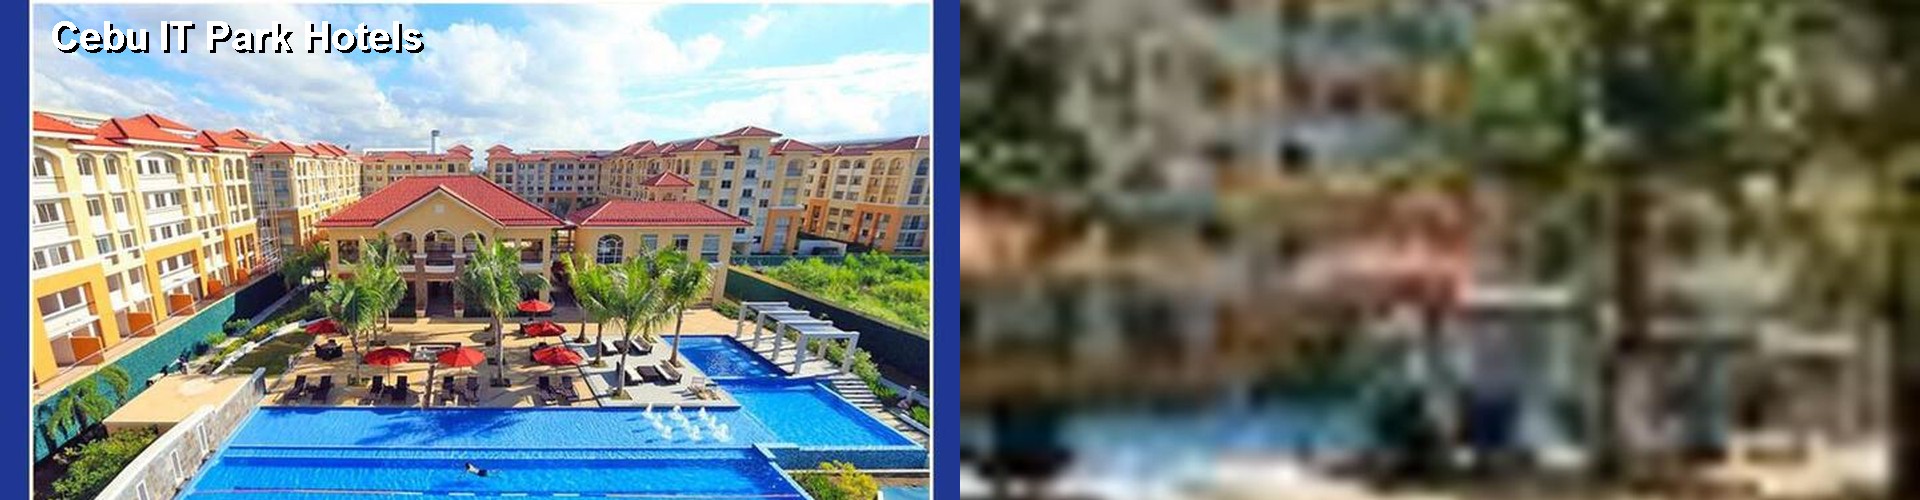 5 Best Hotels near Cebu IT Park